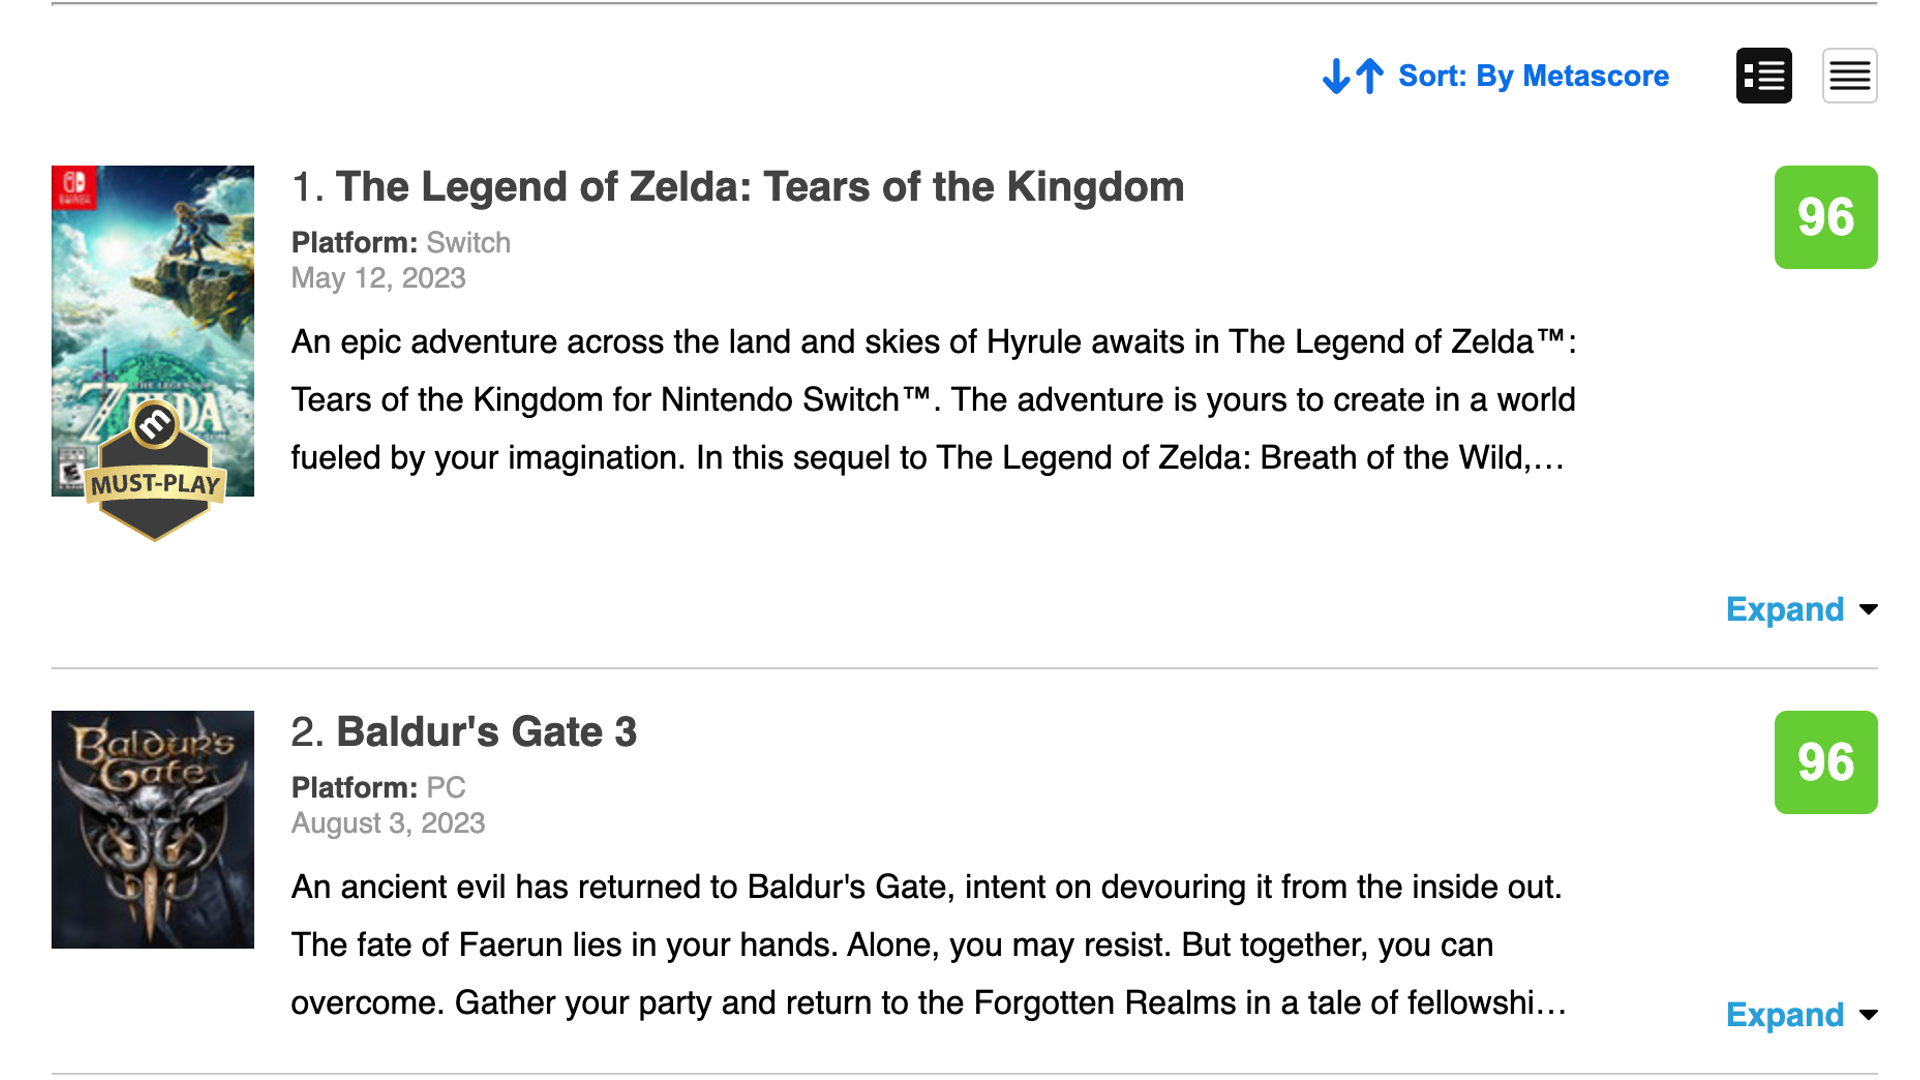 Baldur's Gate 3 surpasses Zelda: Tears of the Kingdom as Game of